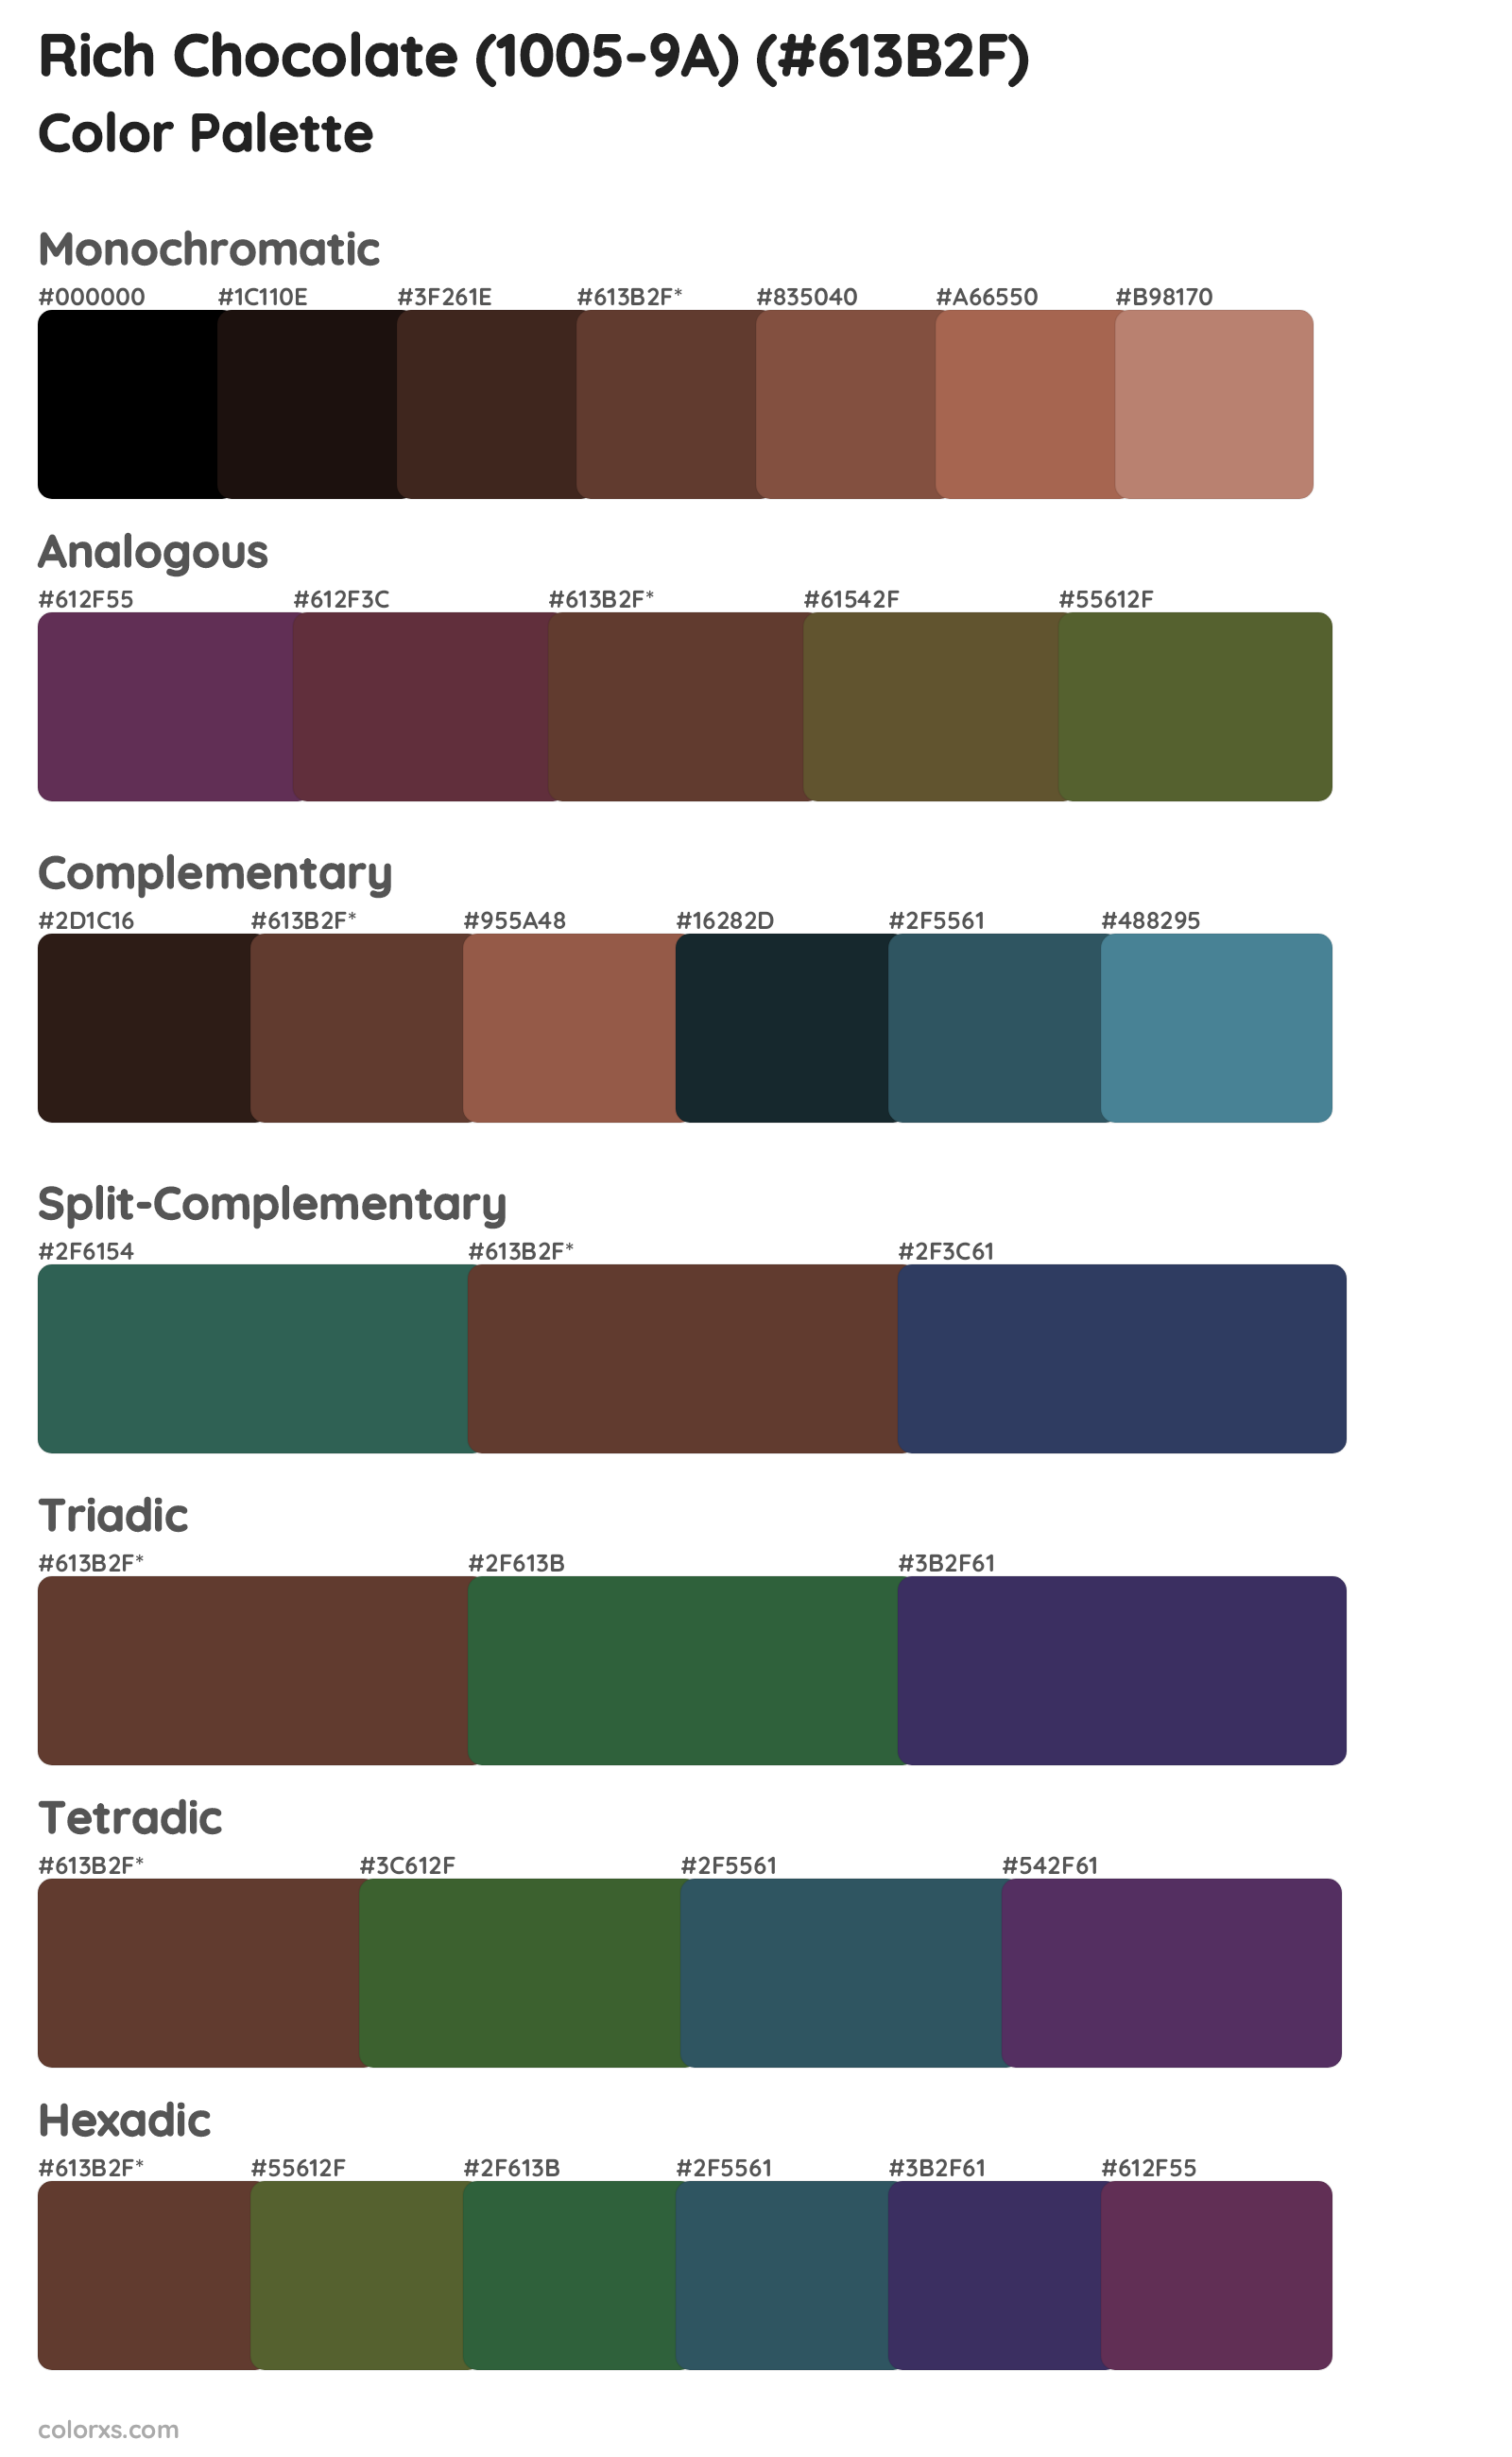 Rich Chocolate (1005-9A) Color Scheme Palettes